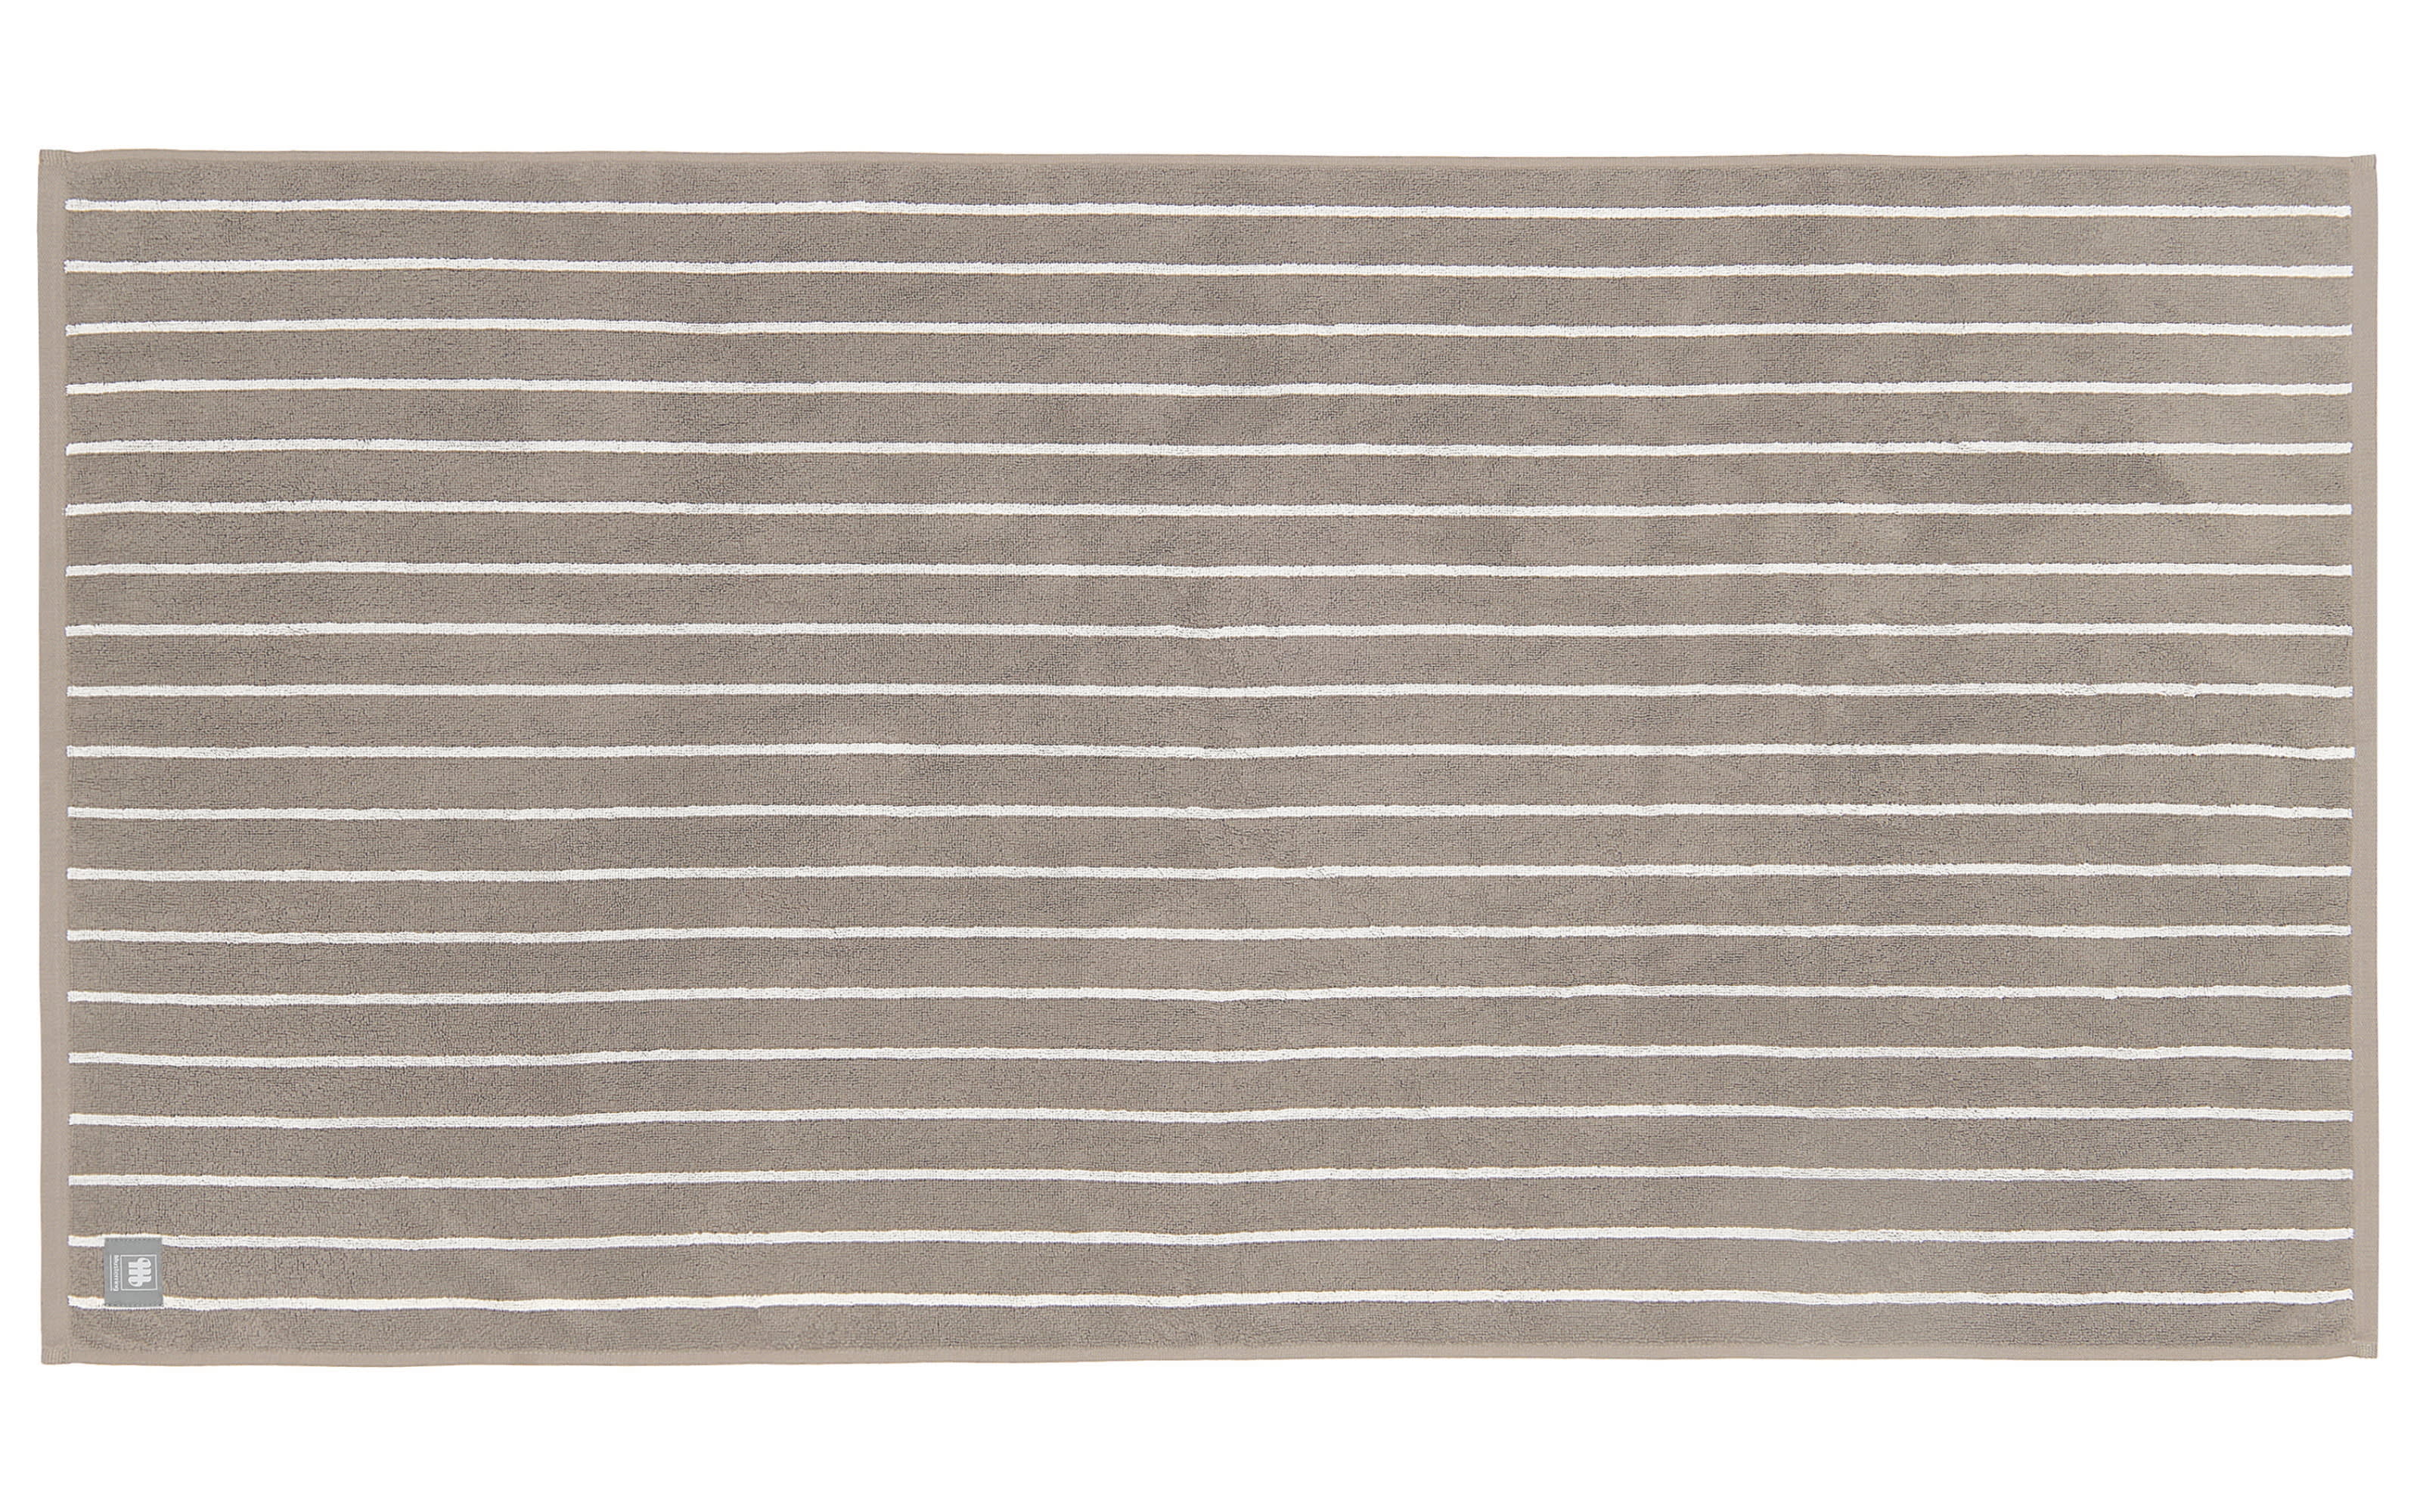 Duschtuch mit Needlestripe, grau, 70 x 140 cm